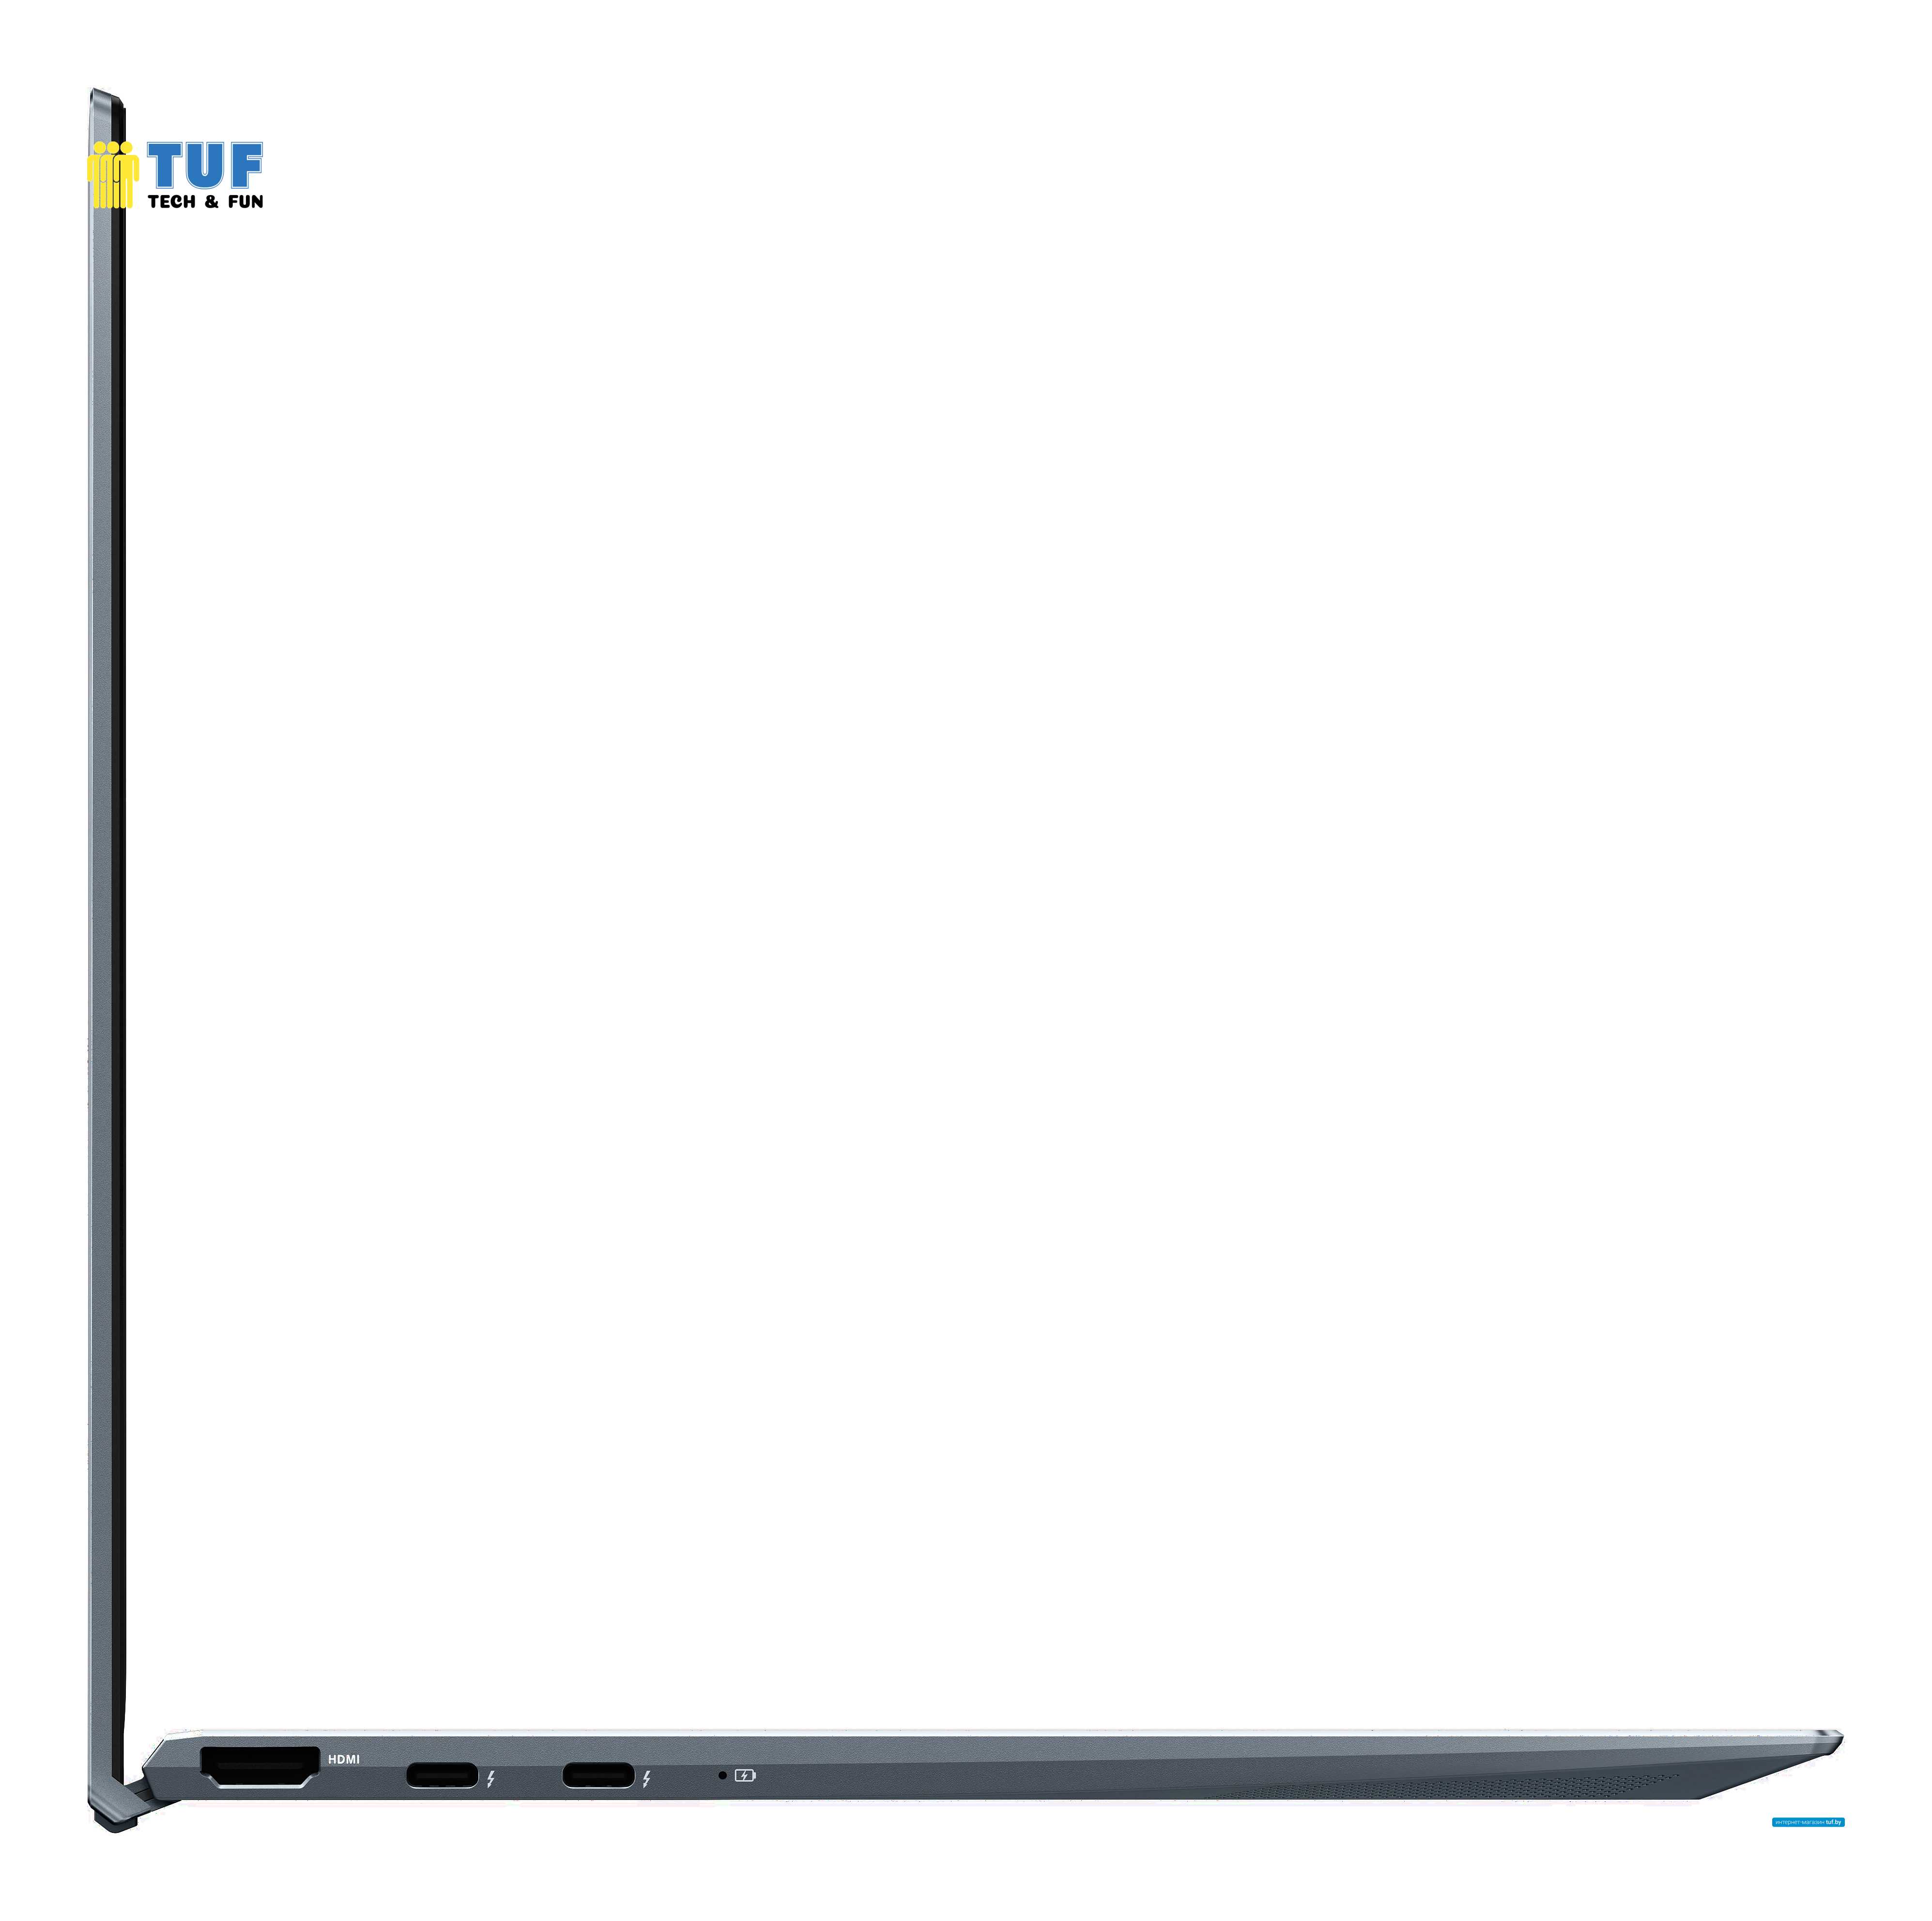 Ноутбук ASUS ZenBook 14 UX425EA-KI367